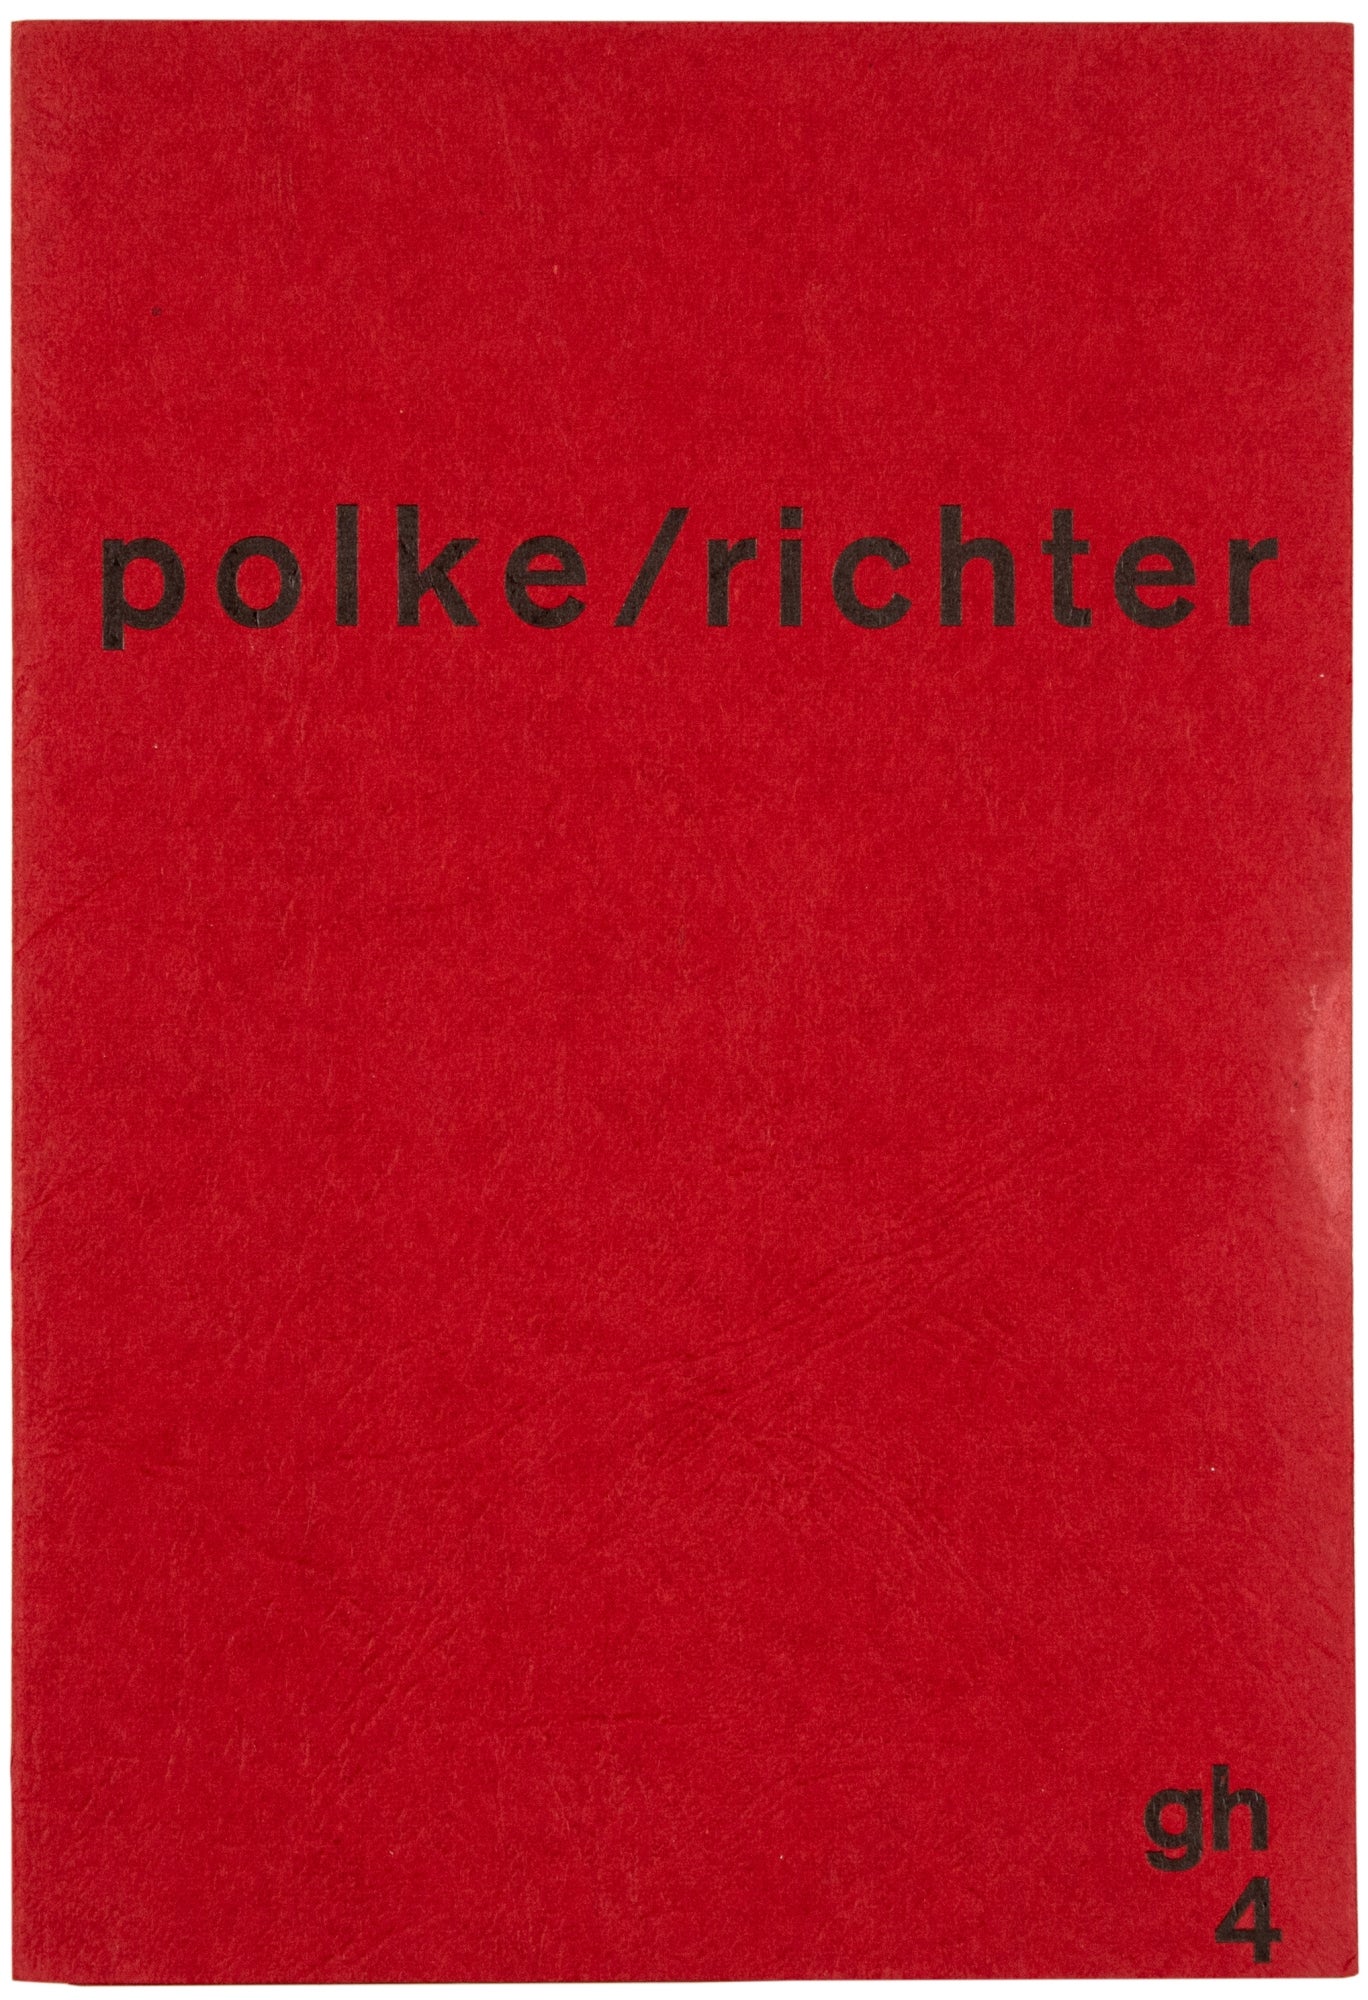 Polke/Richter, Richter/Polke by Sigmar Polke, Gerhard Richter on Harper's